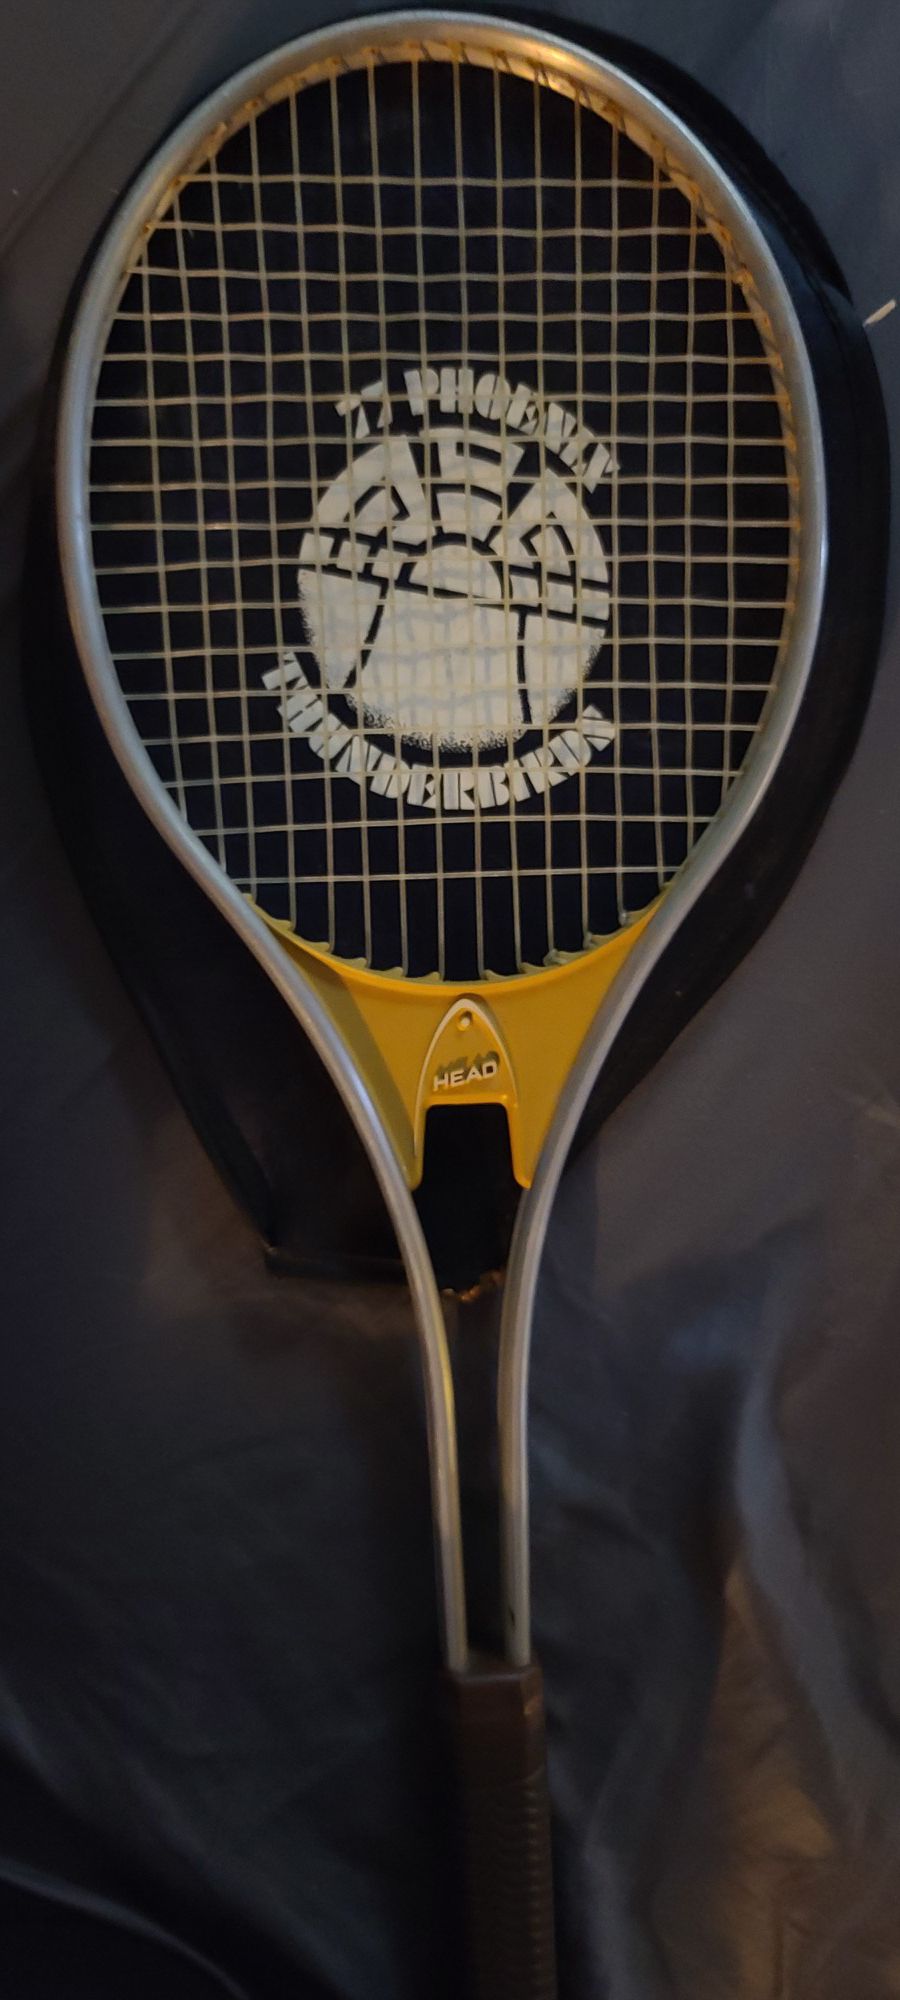 70s tennis racket